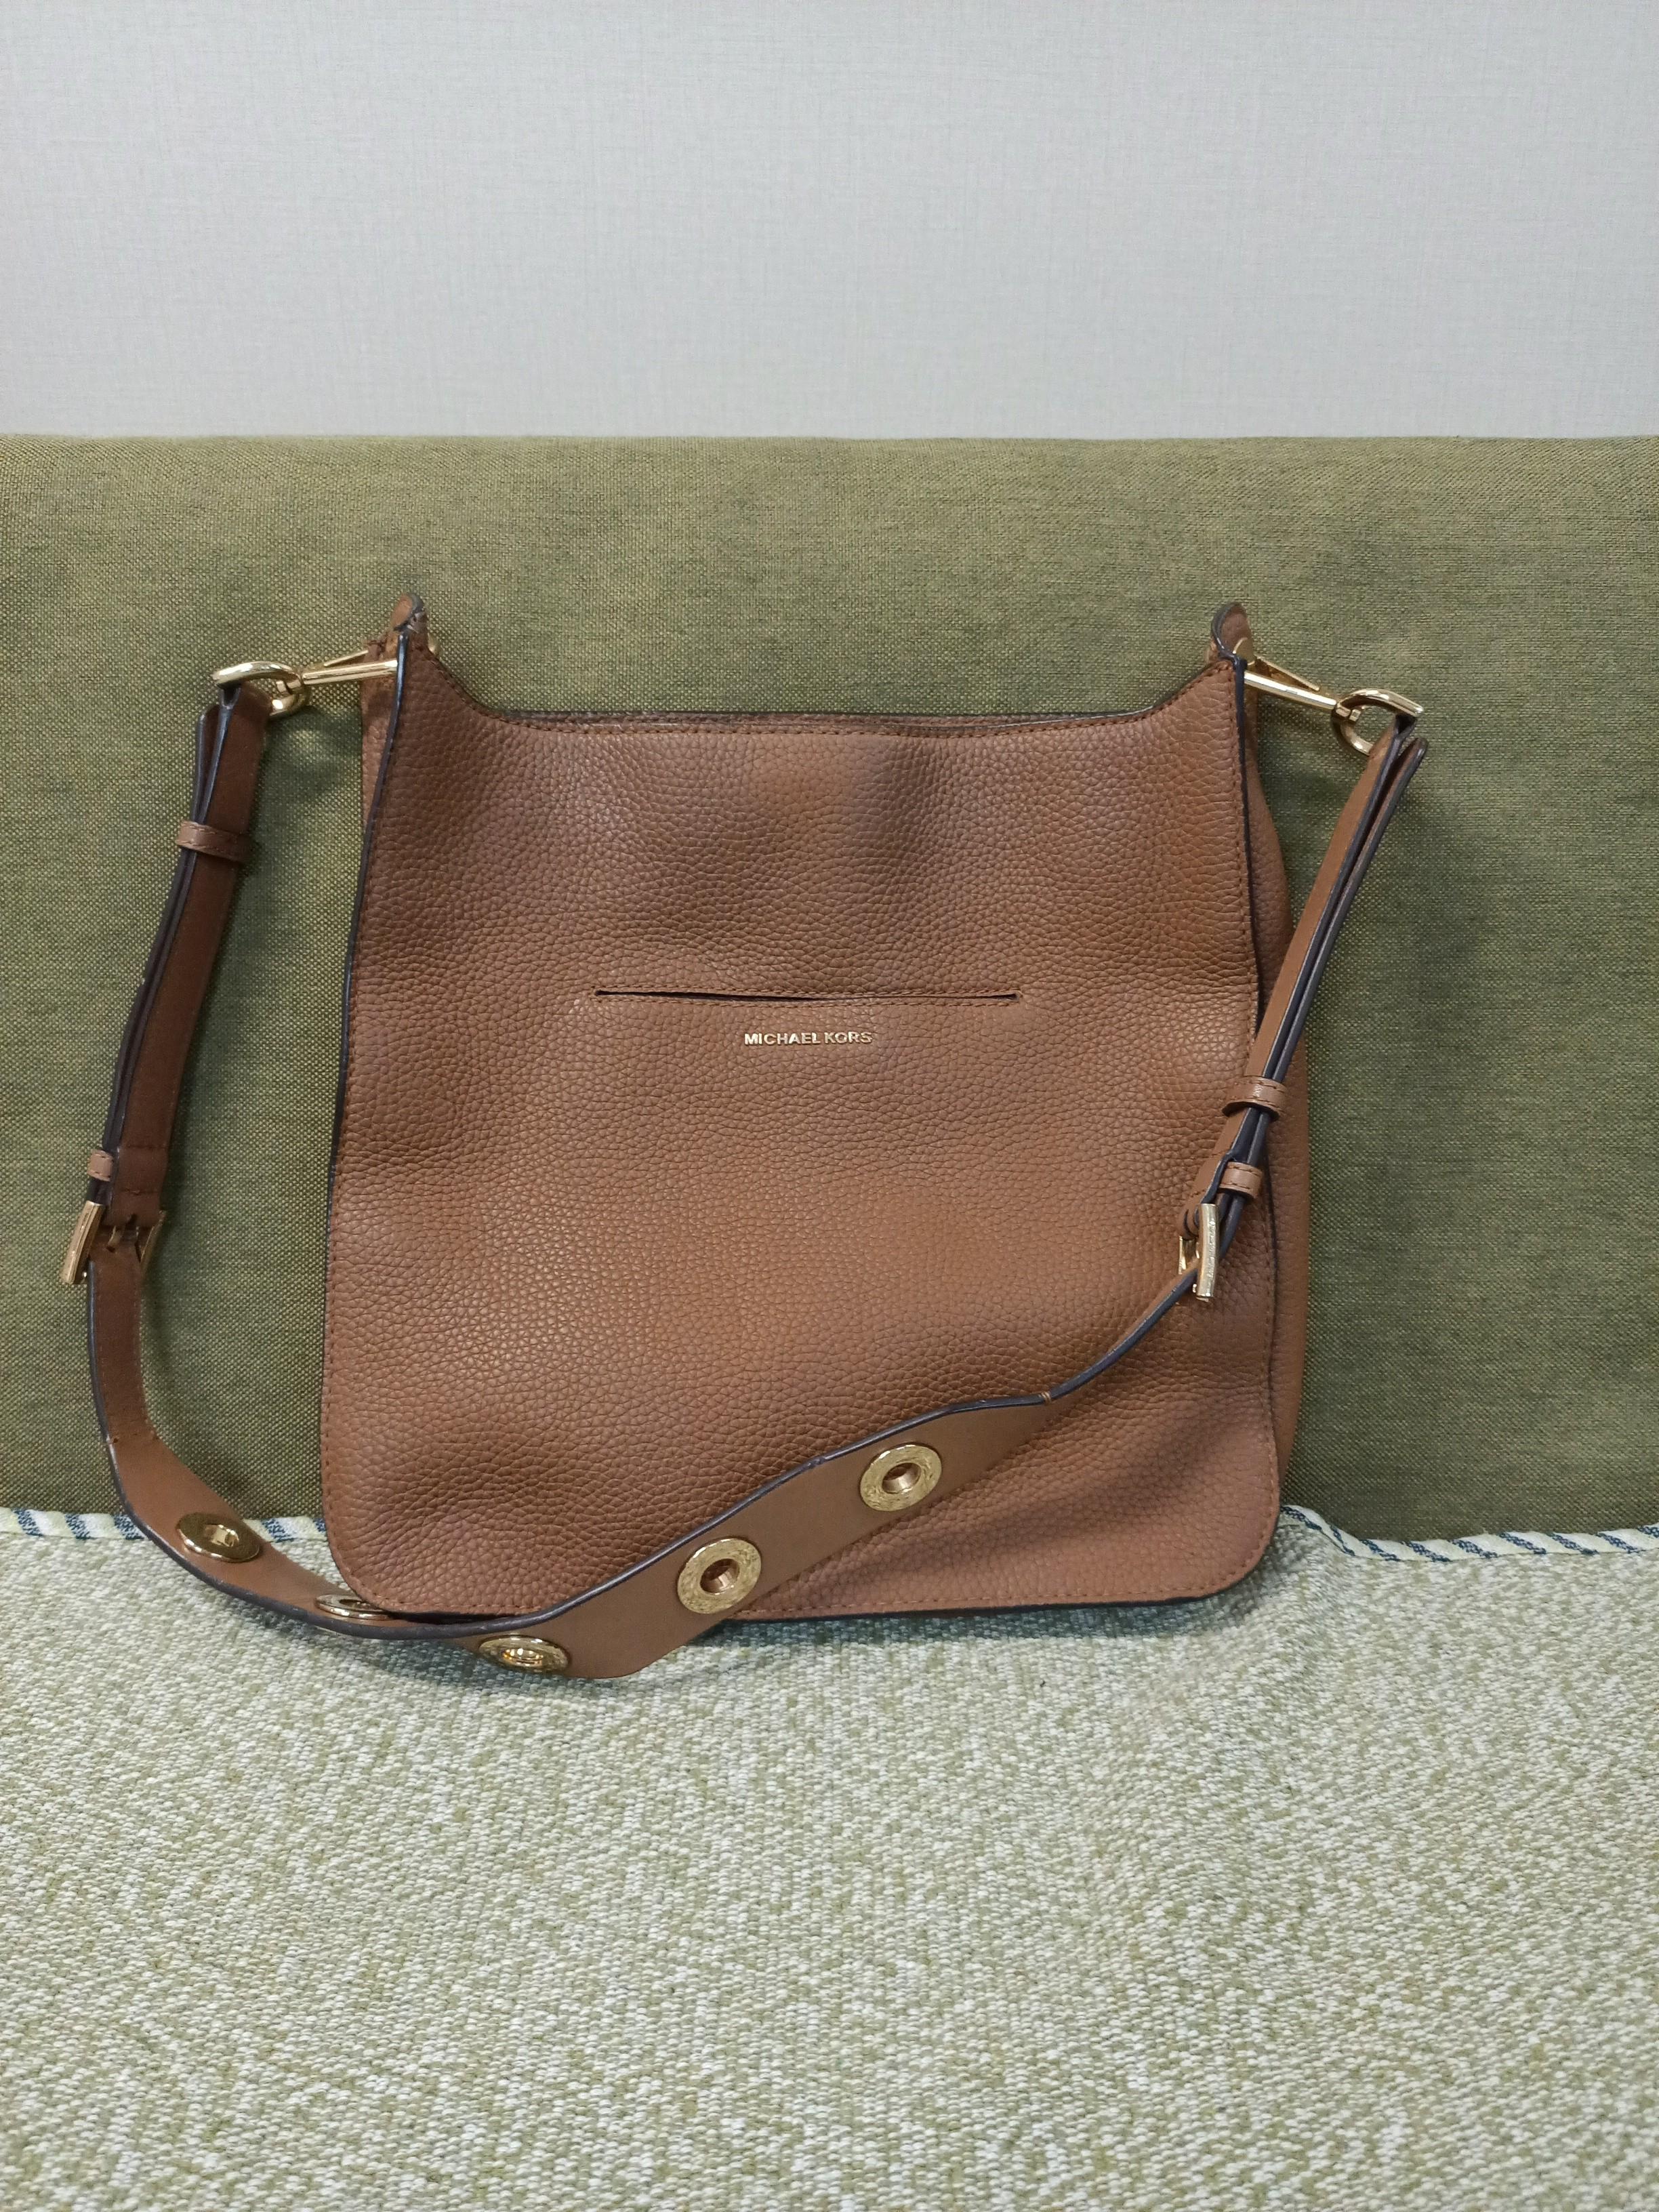 Michael Kors Sullivan Large Leather Messenger Bag - Brown